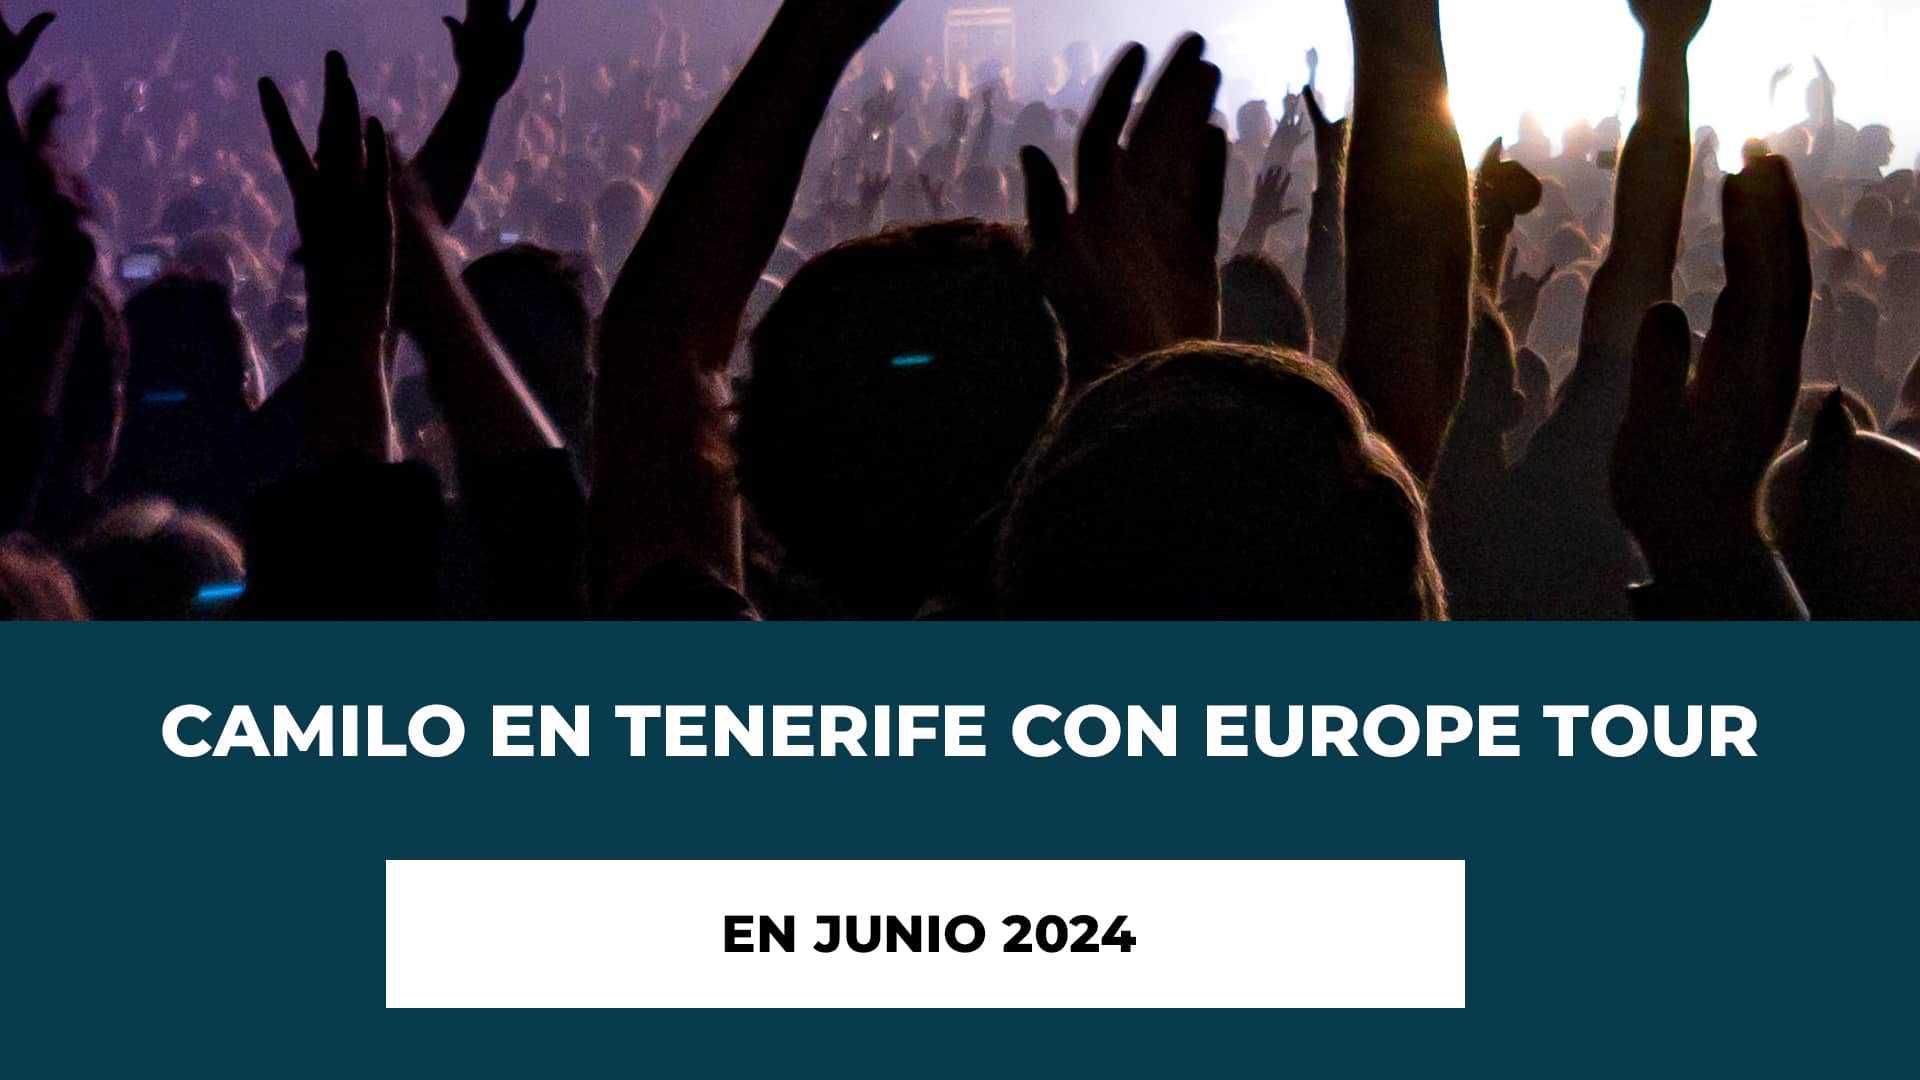 Camilo en Tenerife con Europe Tour en Junio 2024 - Fecha y Horario - Entradas disponibles - Camilo es Único